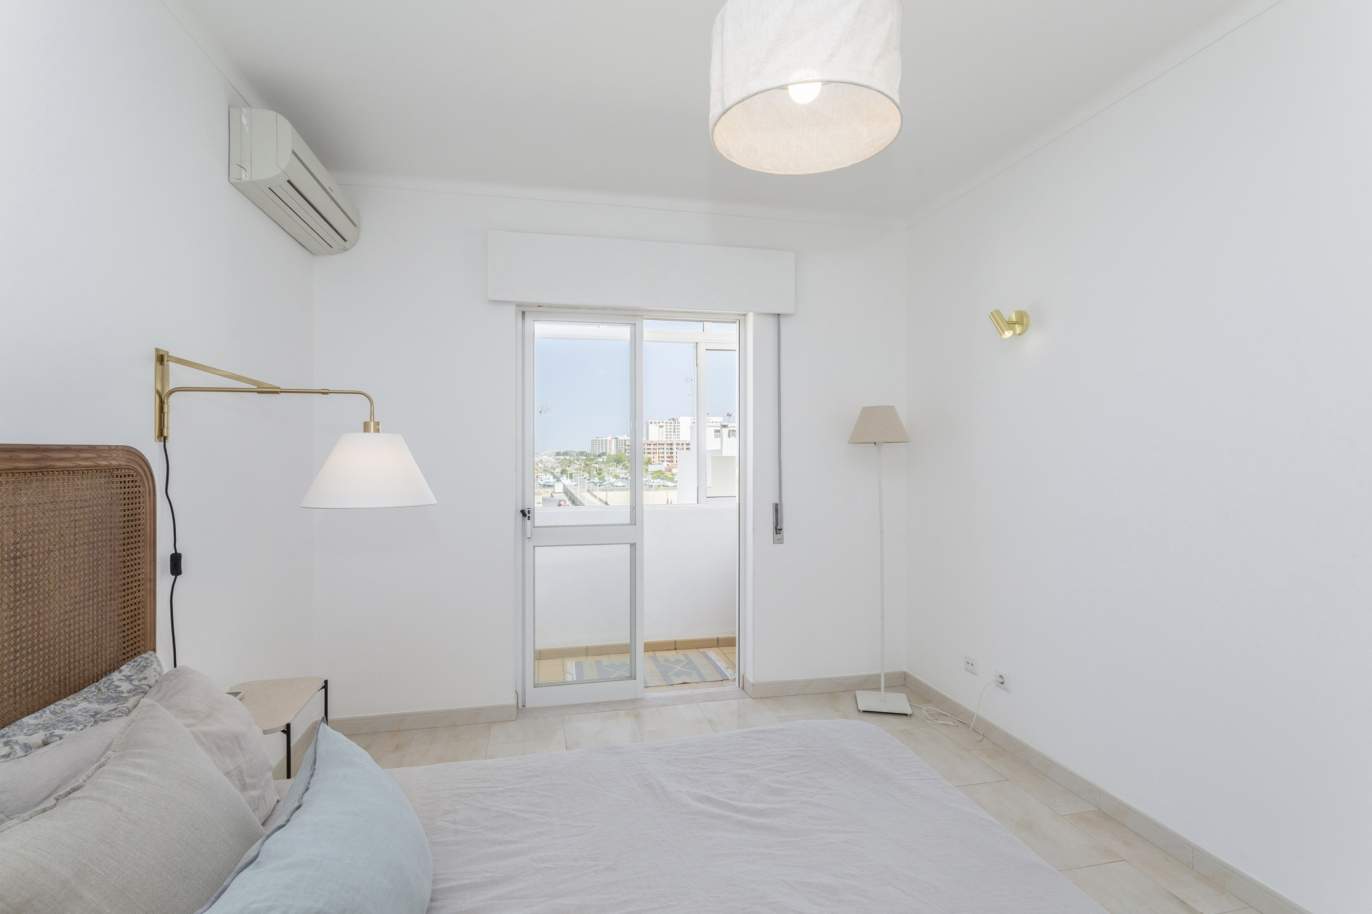 Piso de 1 dormitorio en venta en Quarteira centro, Algarve_204550